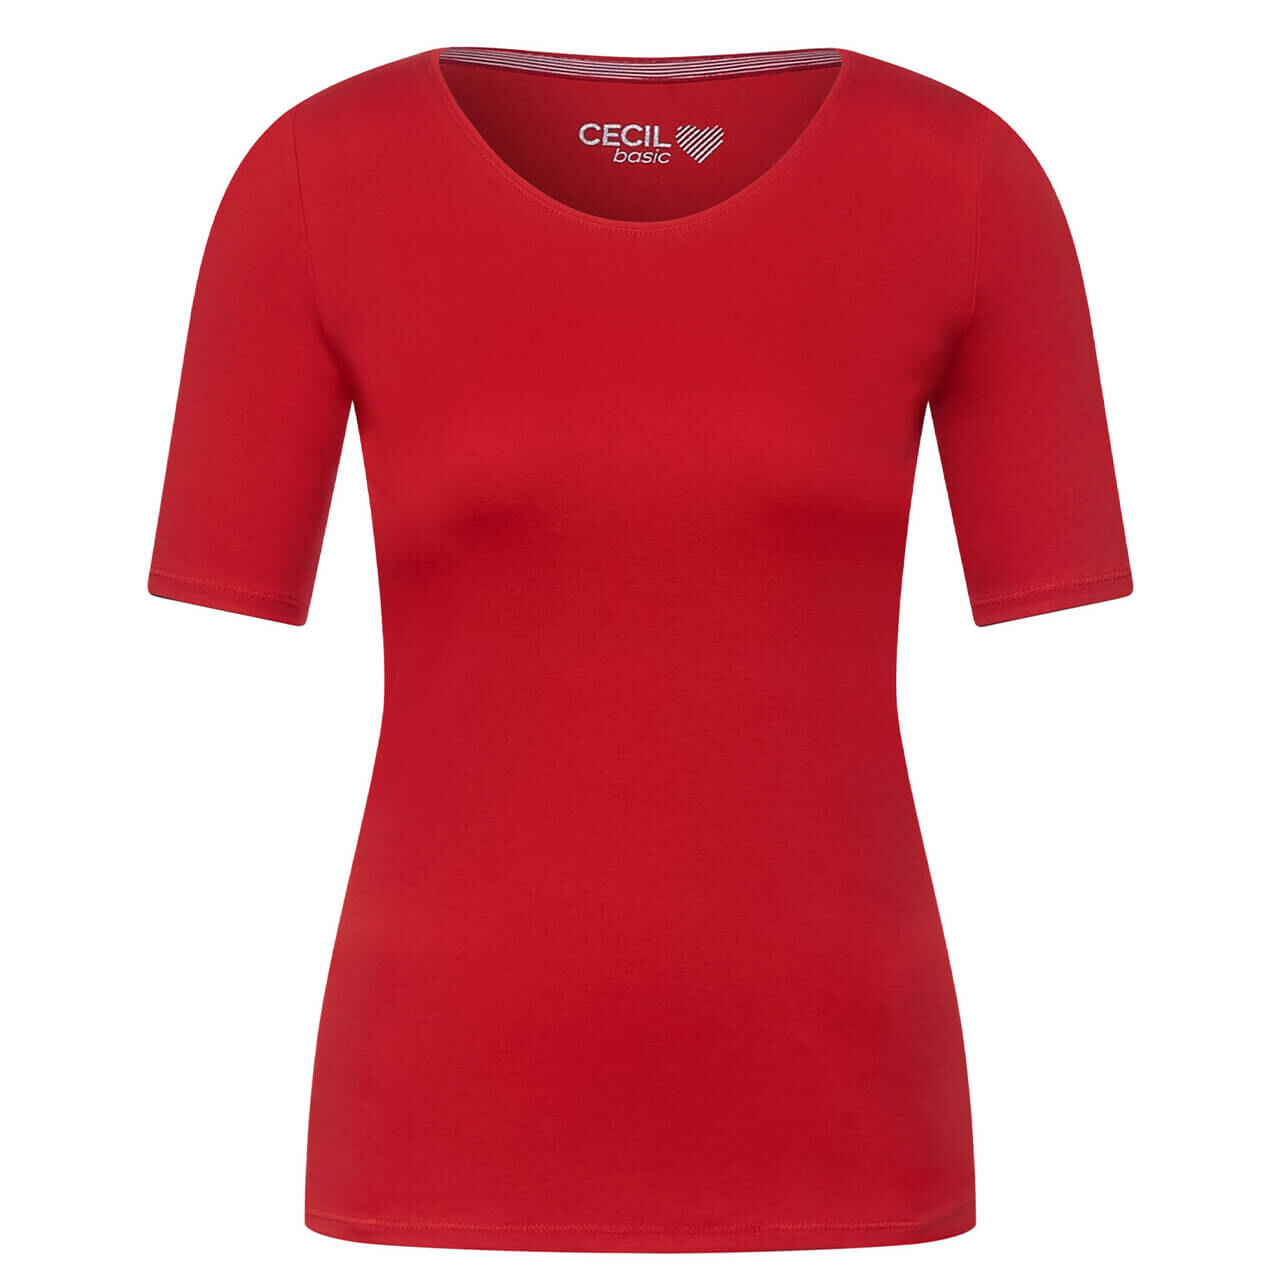 Cecil Lena T-Shirt für Damen in Rot, FarbNr.: 13645